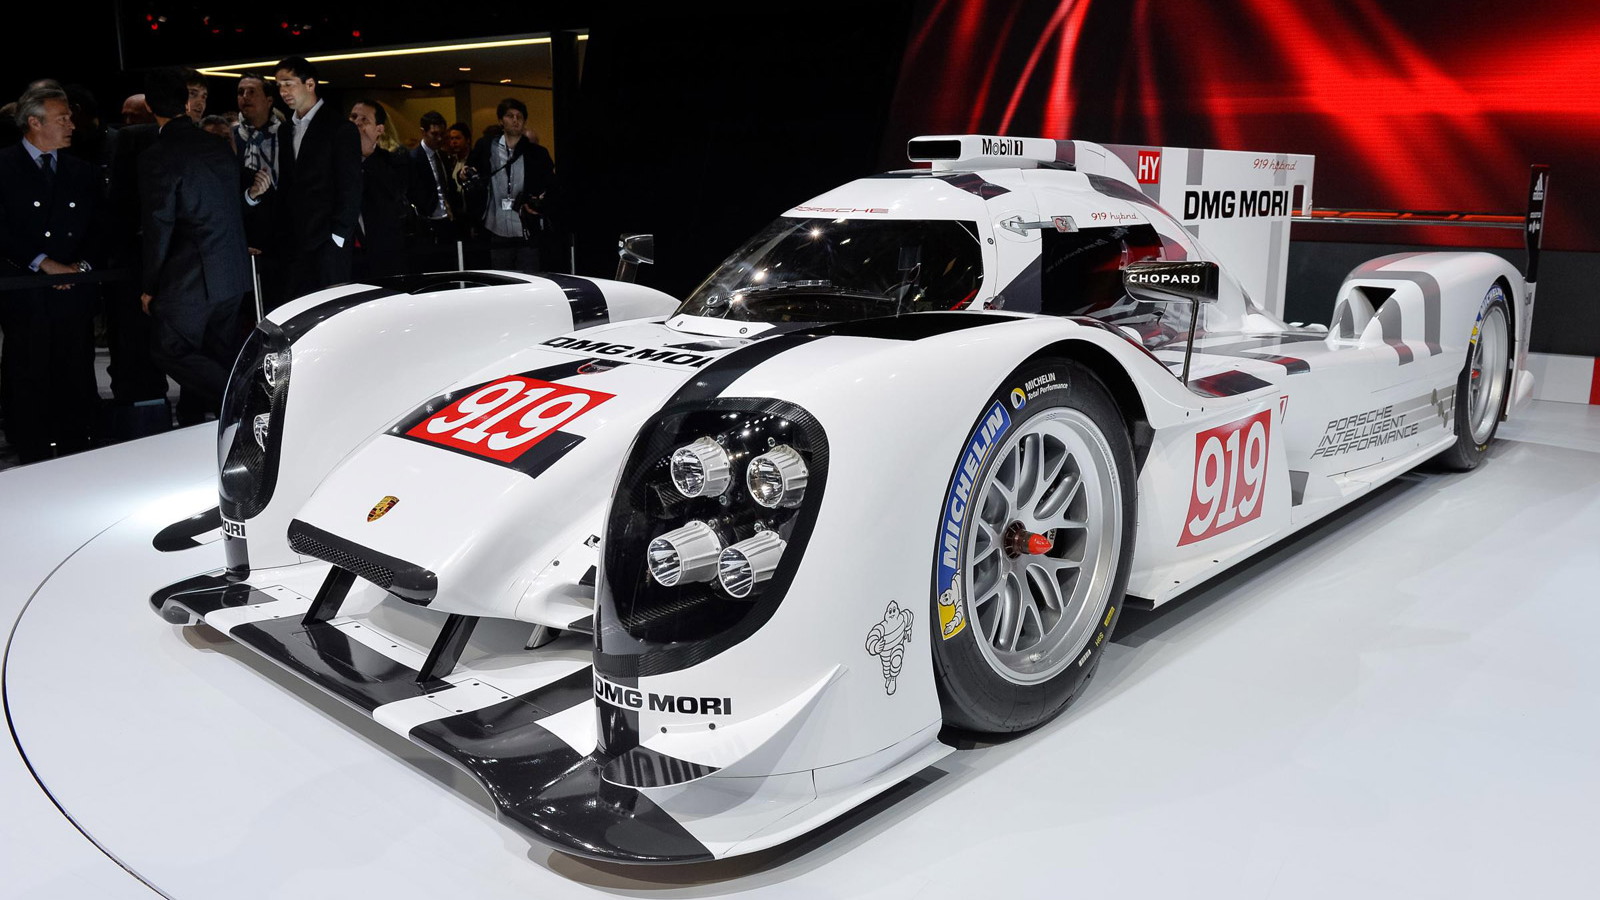 2014 Porsche 919 hybrid Le Mans prototype